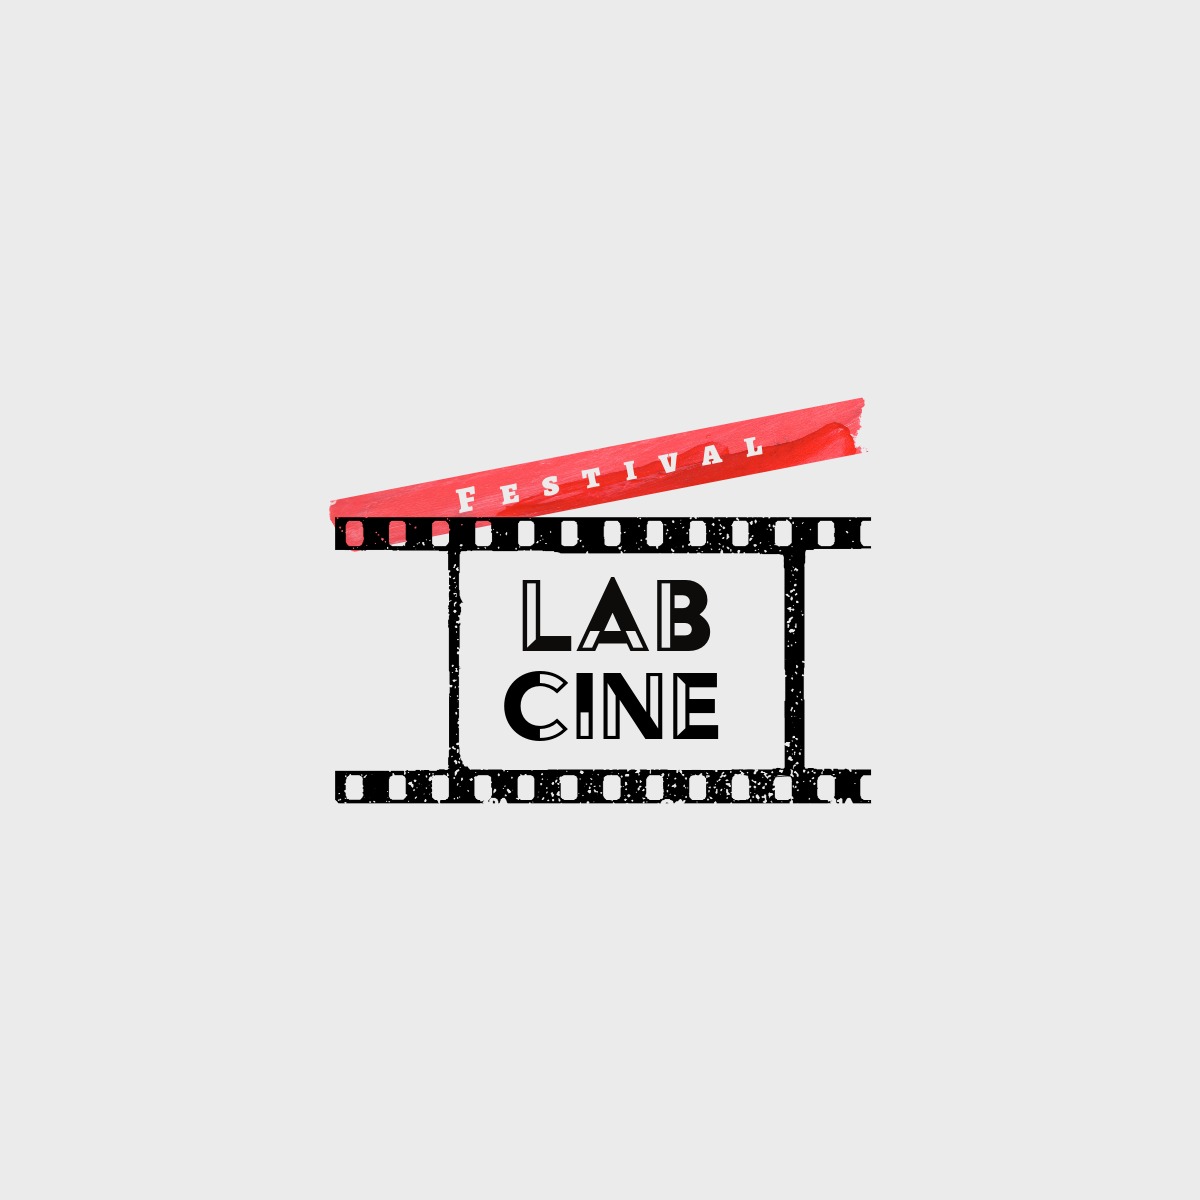 LabCine estimula, na prática, a criatividade de estudantes de Cinema da PUCPR